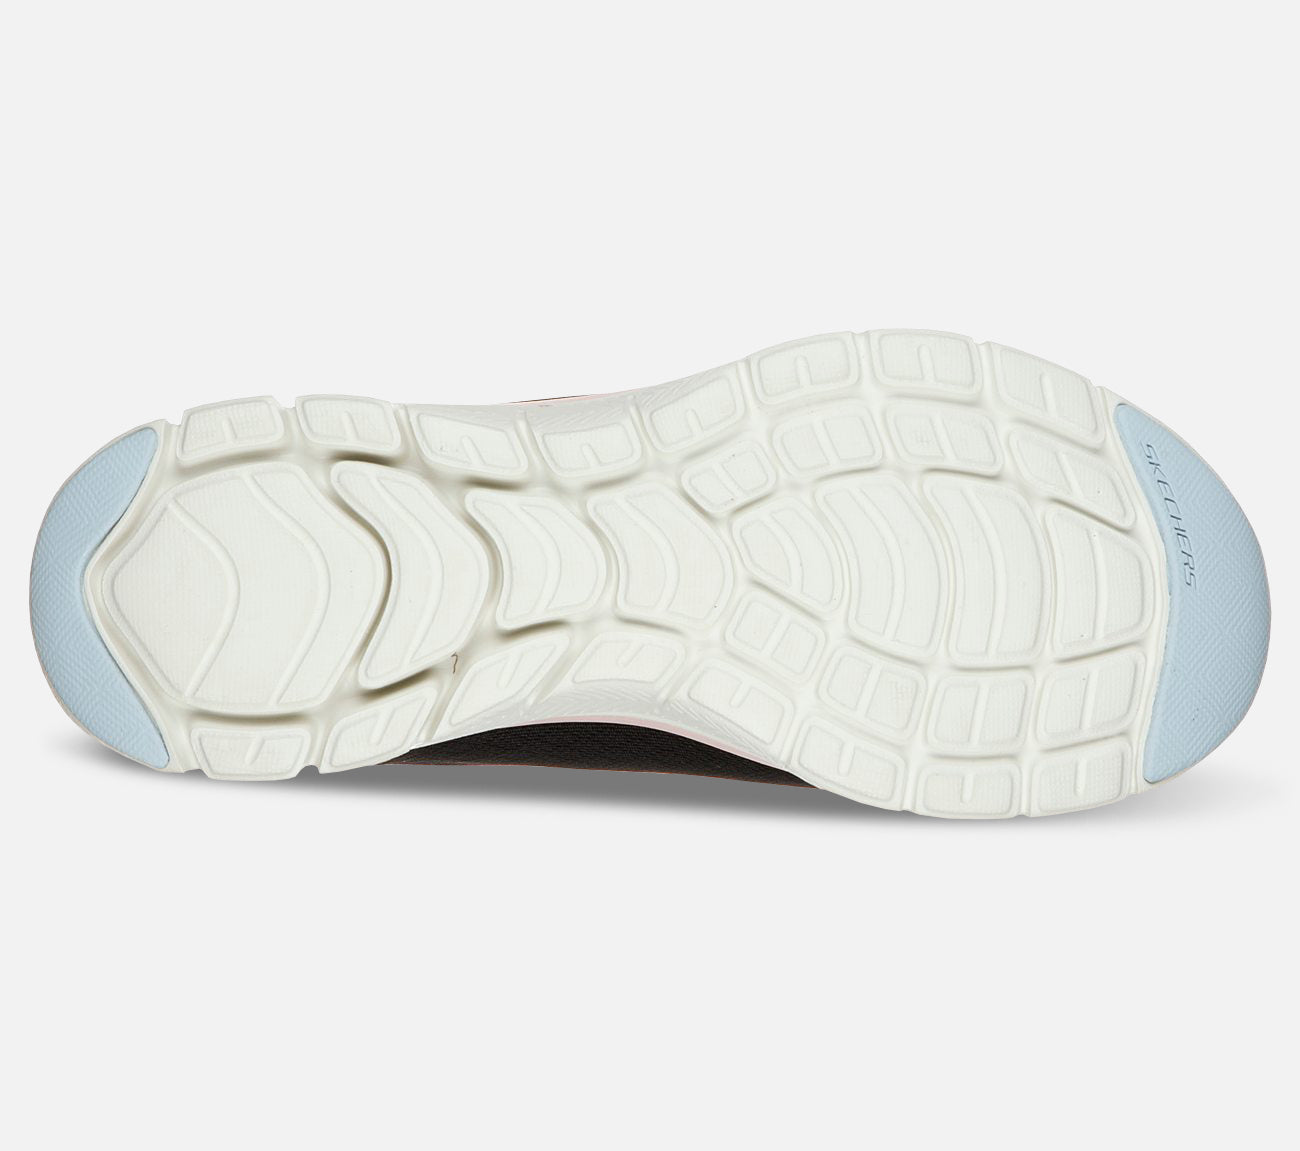 Flex Appeal 4.0 - Waterproof Shoe Skechers